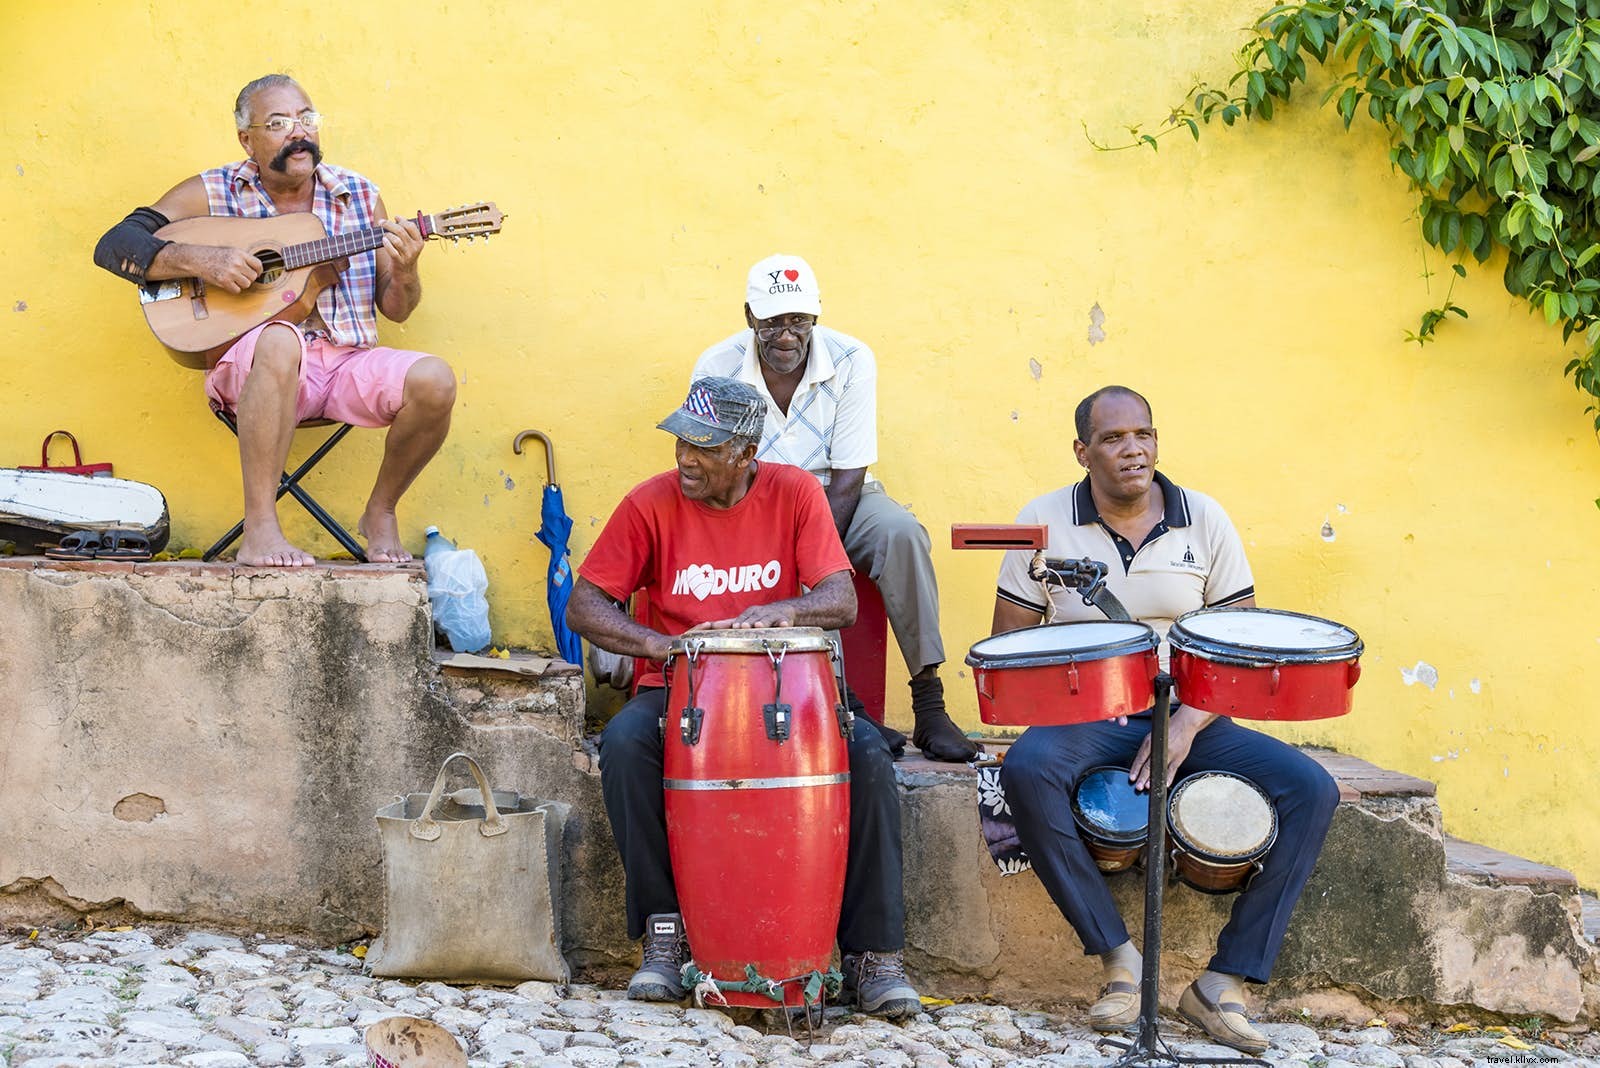 El ritmo cubano:jiwa musik Kuba 